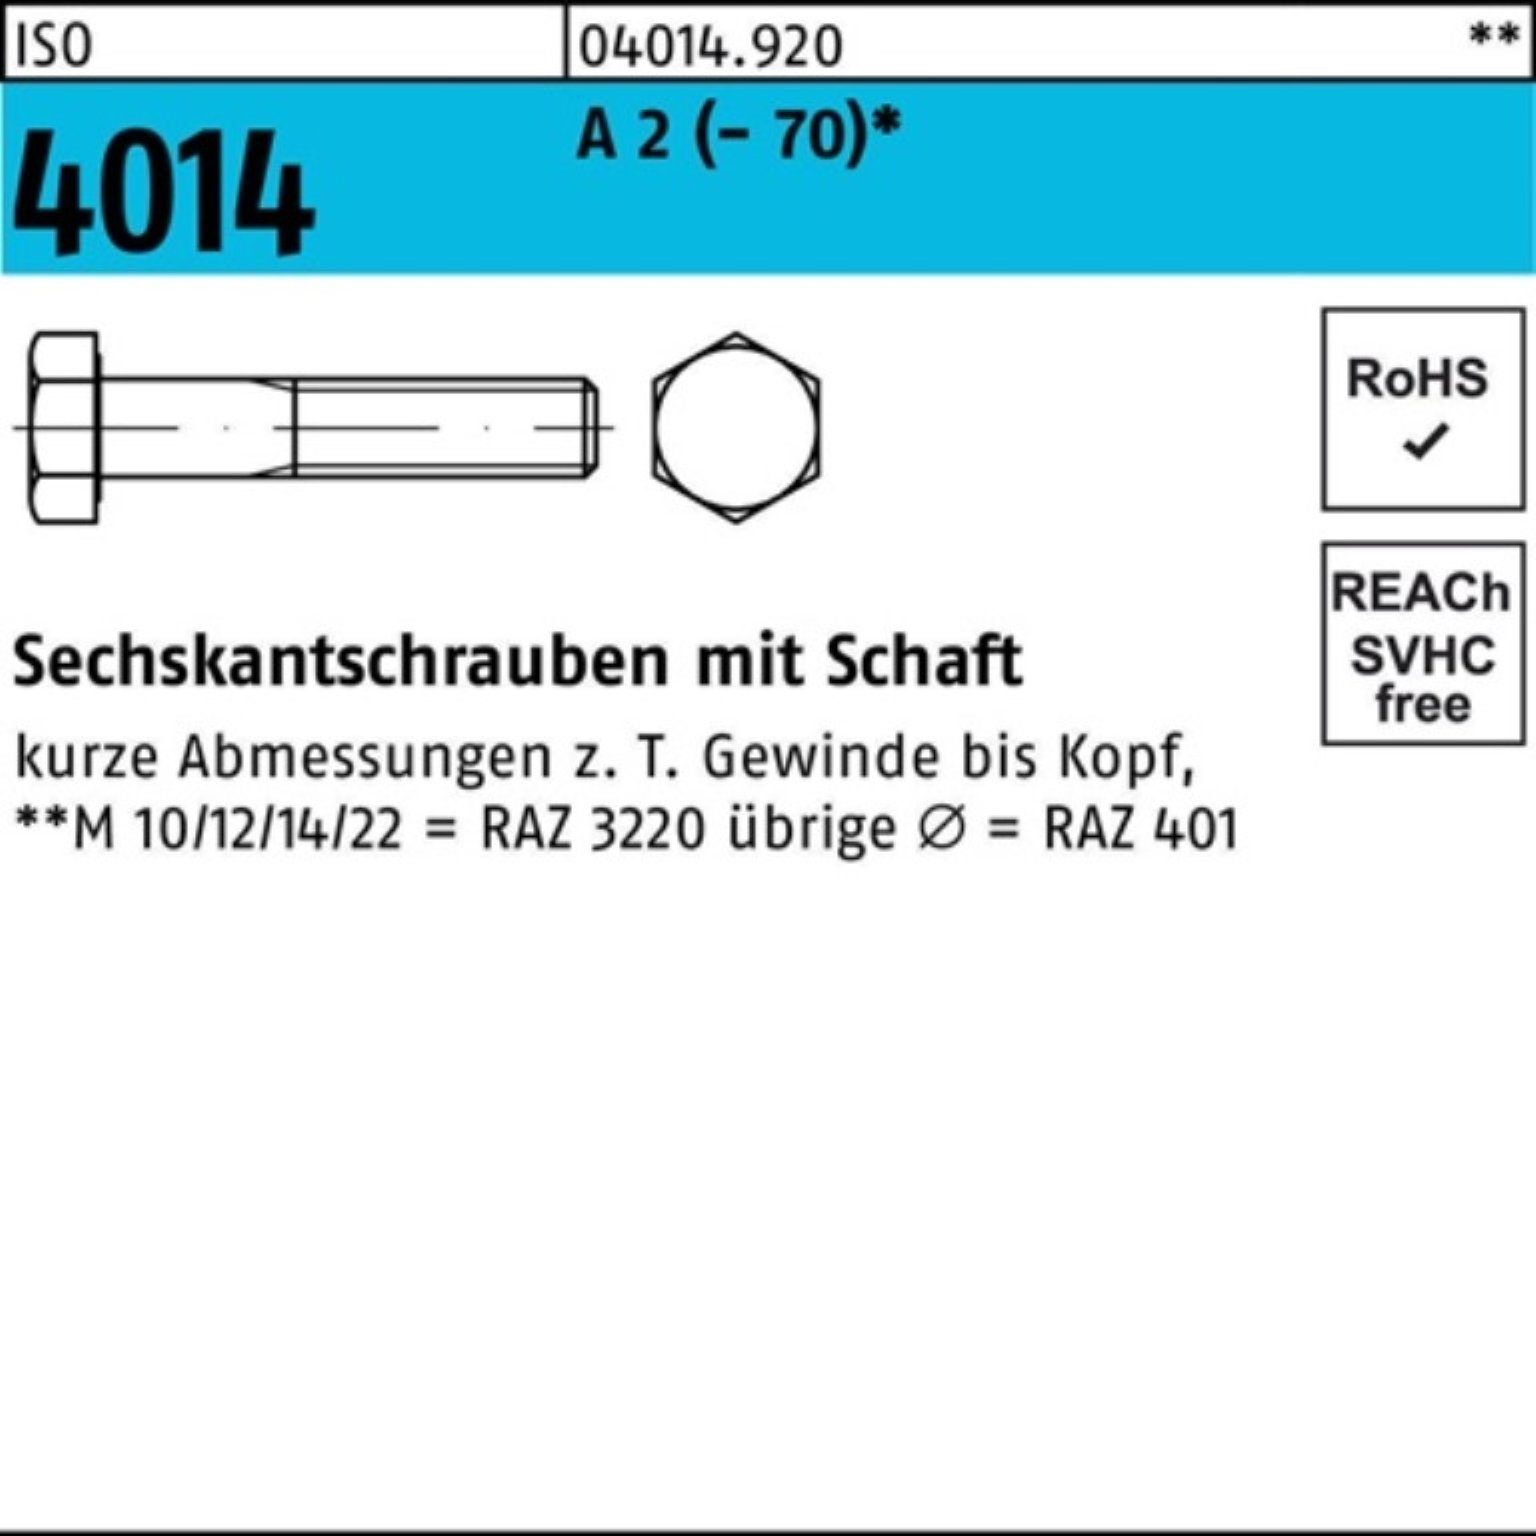 Bufab Sechskantschraube 100er Pack Sechskantschraube A ISO (70) Schaft St M12x 140 1 4014 2